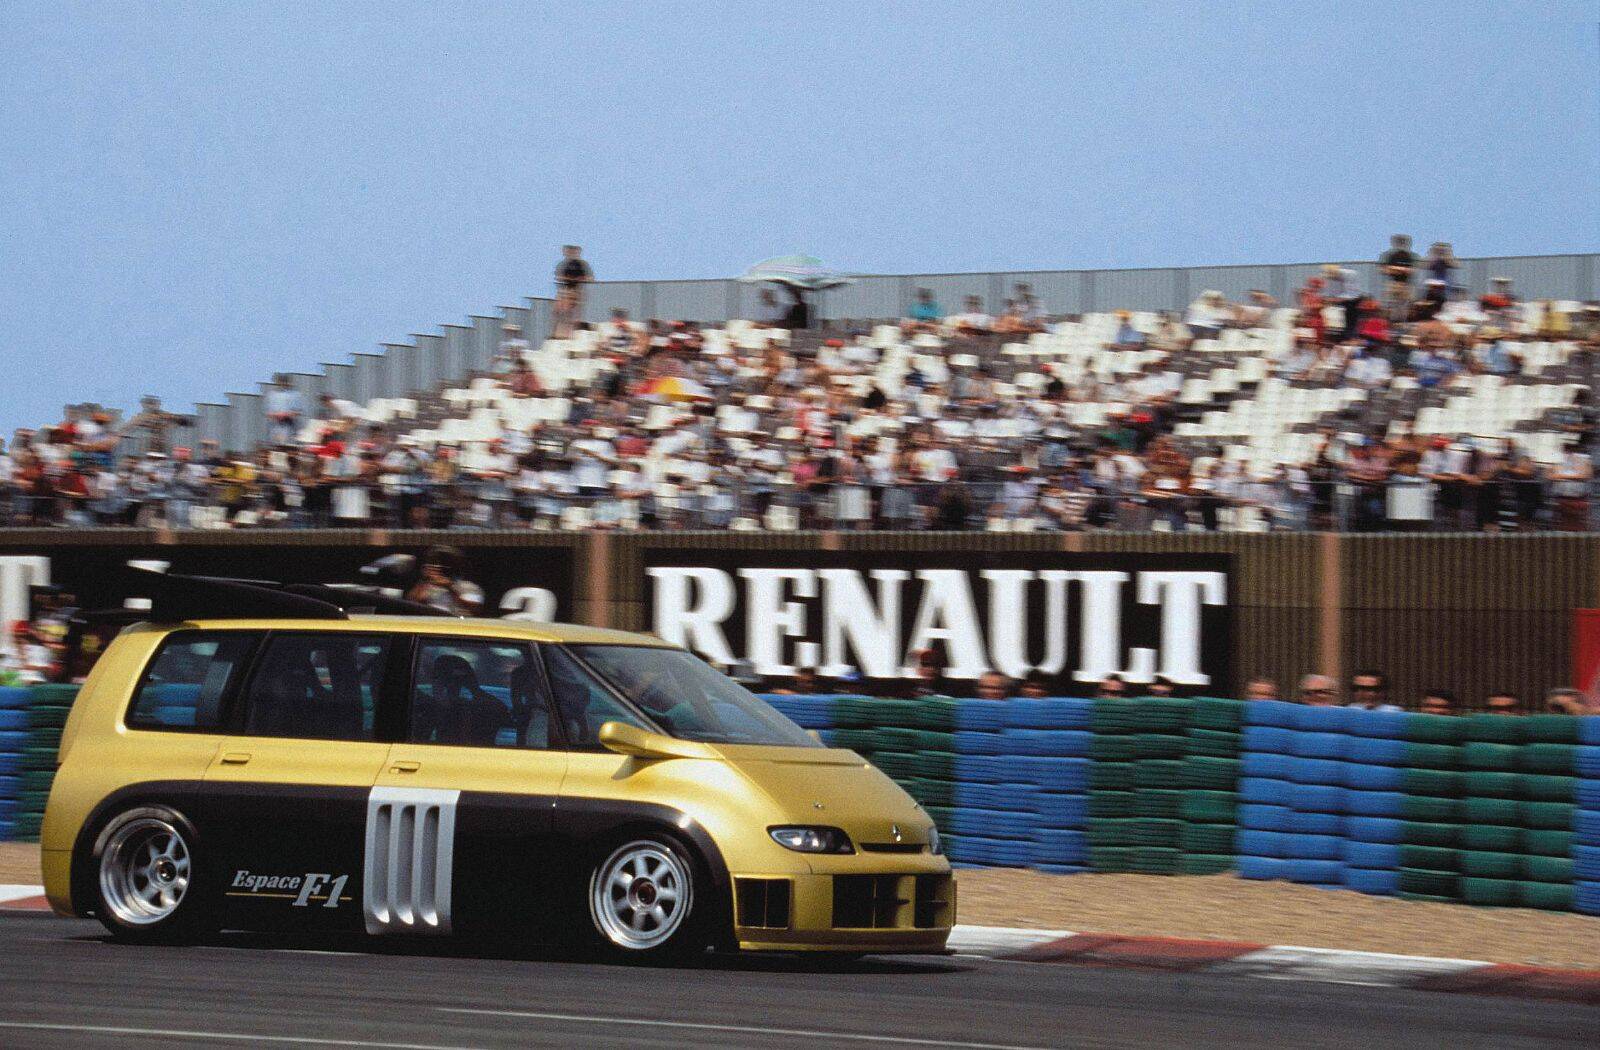 Renault Espace F1. Foto: Divulgação